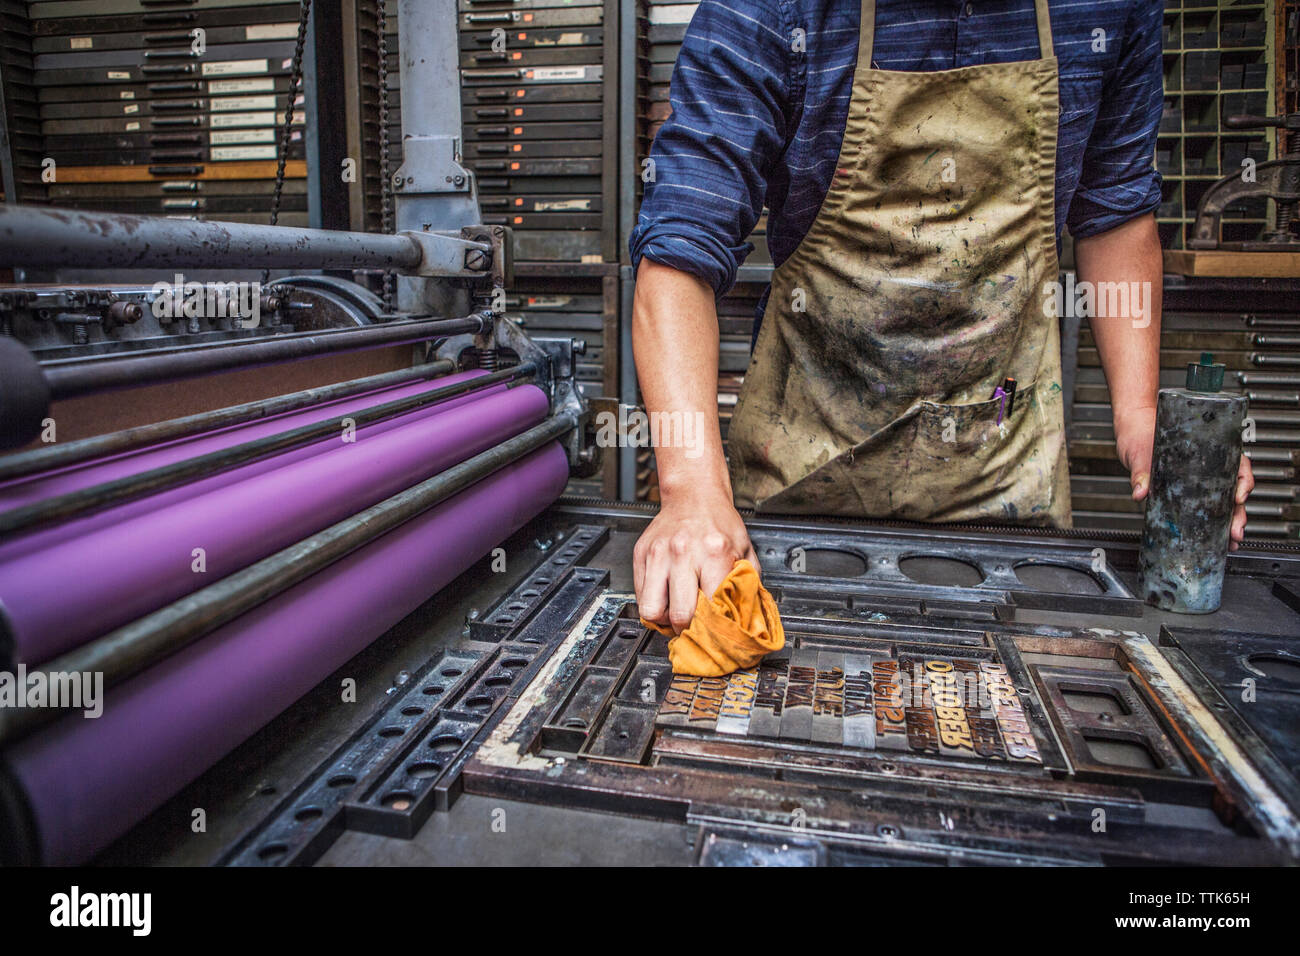 Mittelteil des Menschen Reinigung Buchdruck auf Maschinen in der Werkstatt Stockfoto